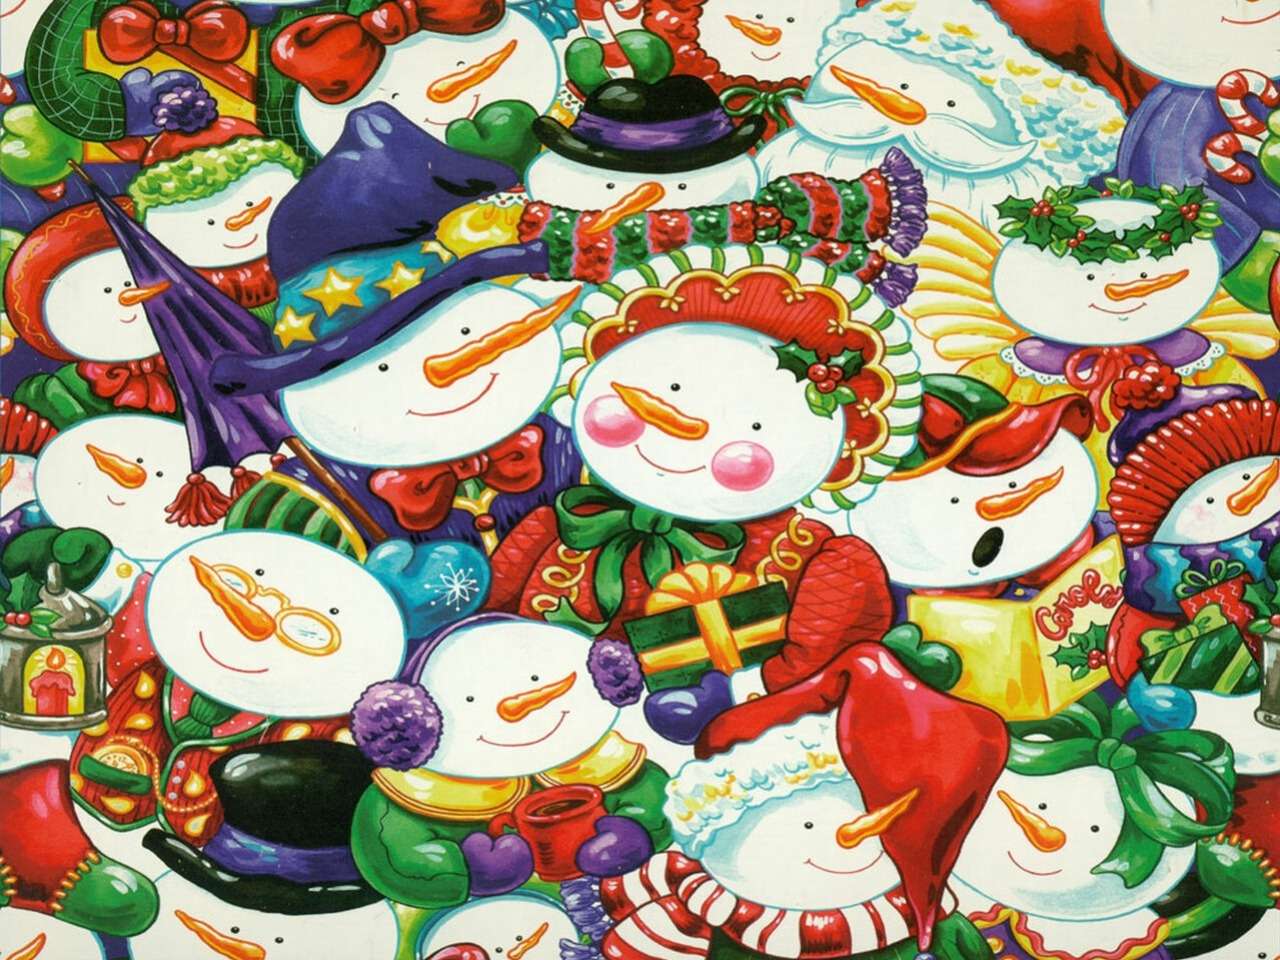 Joyful snowman families online puzzle